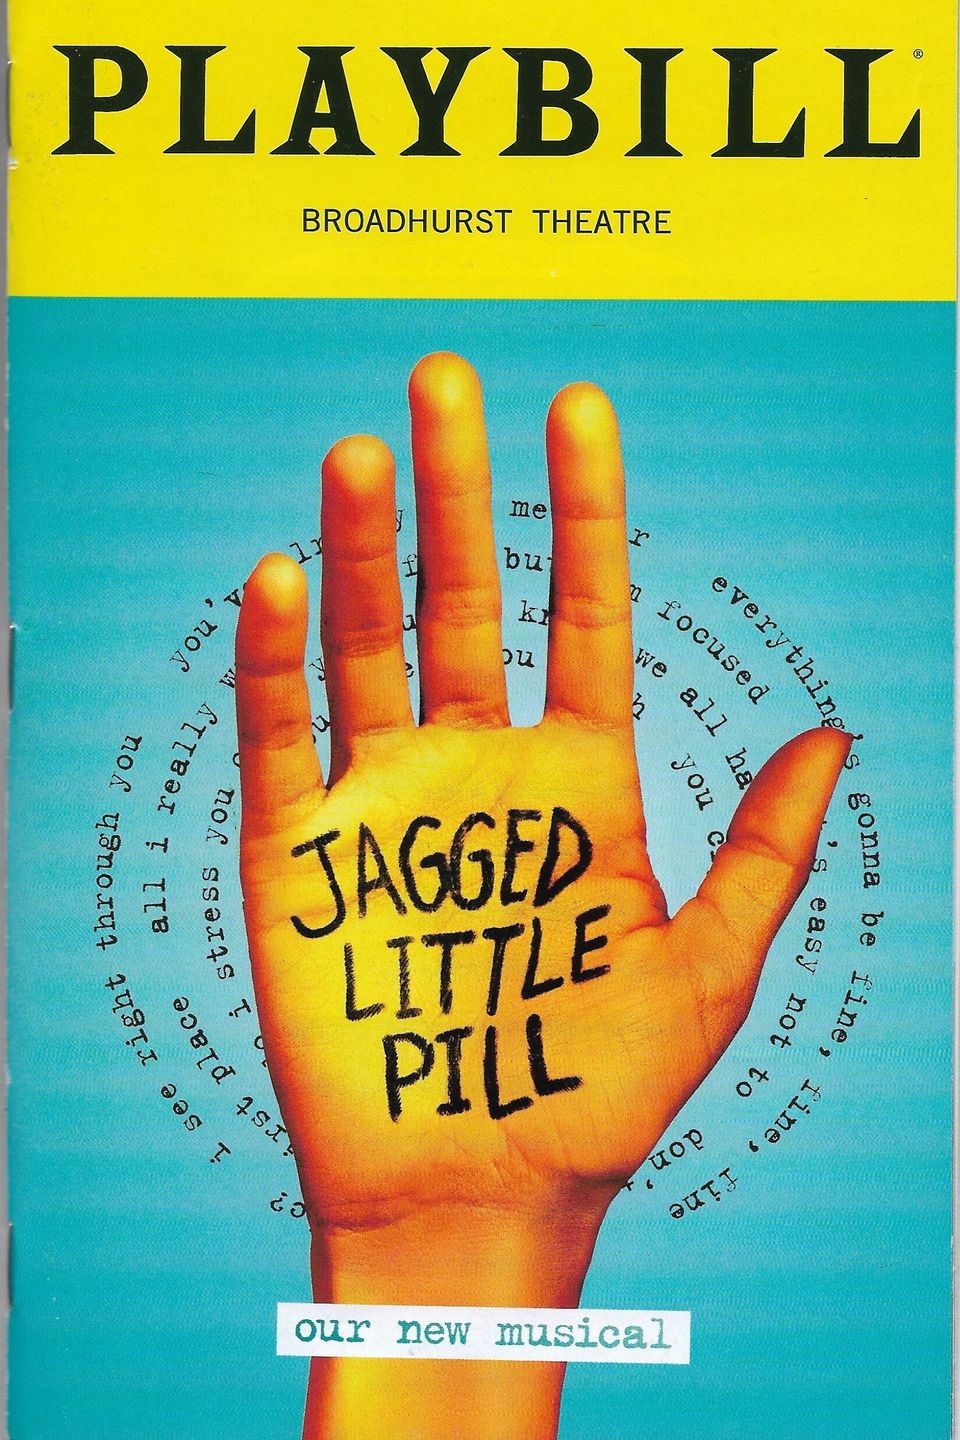 Jagged little pill